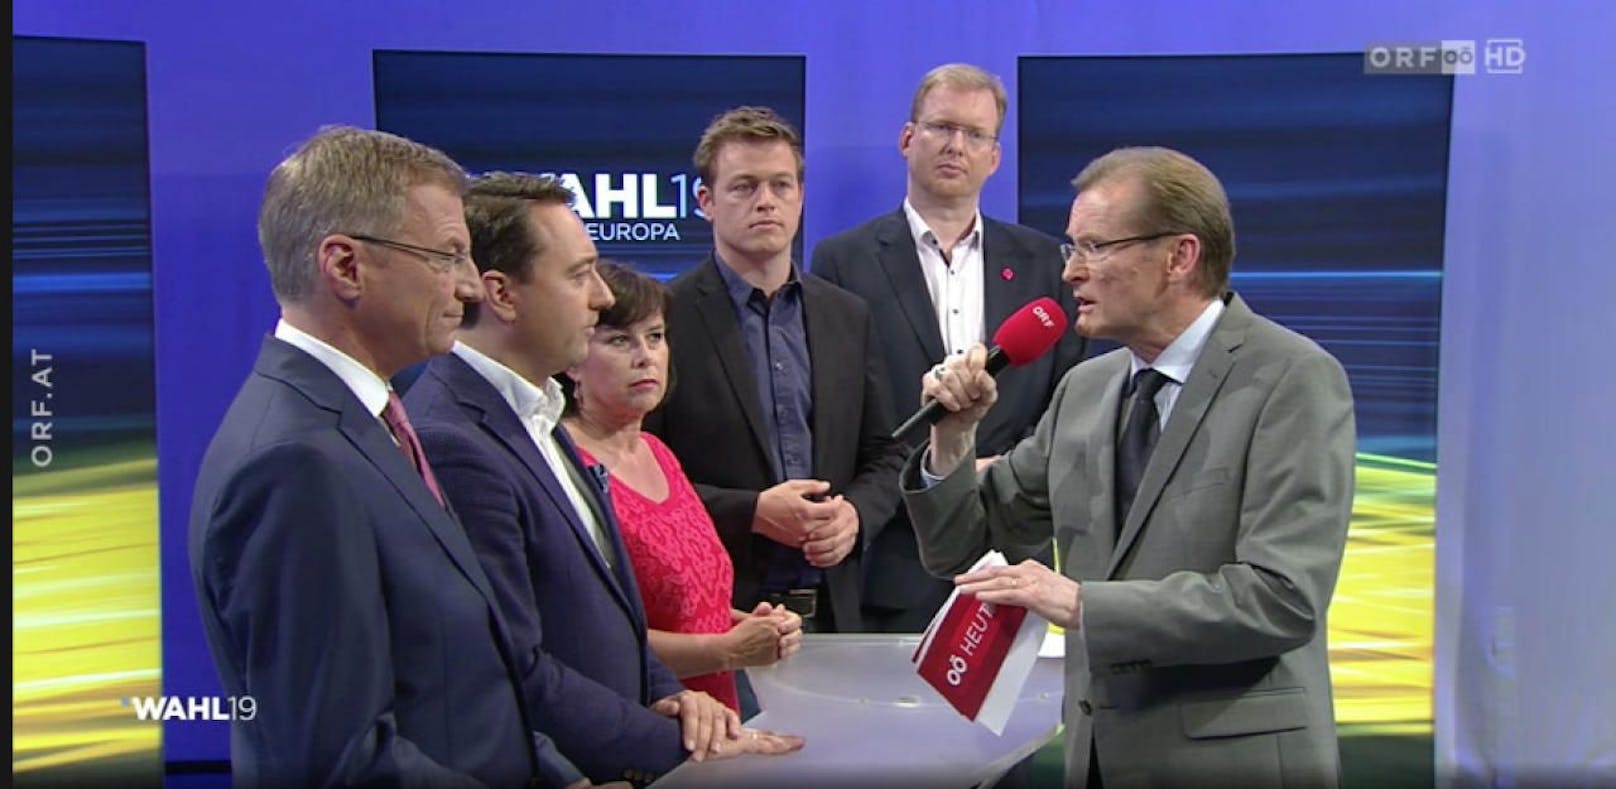 Die Parteichefs im ORF-Interview nach der EU-Wahl.